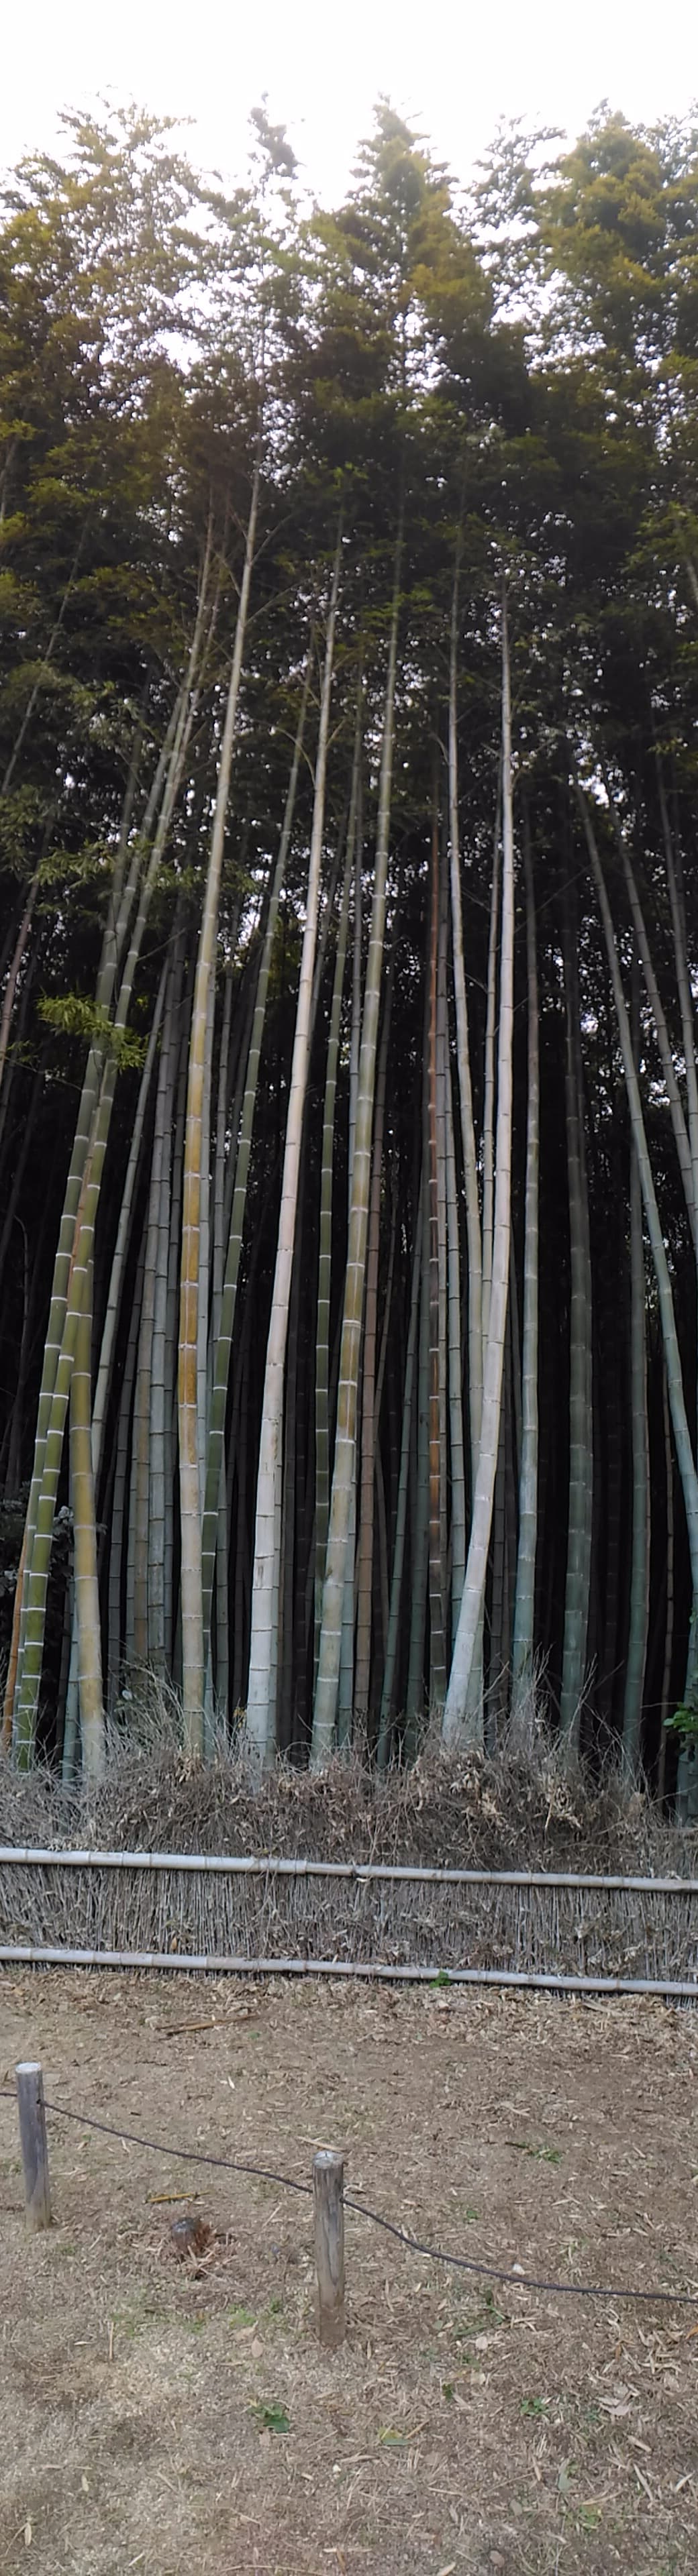 Un bamboo.